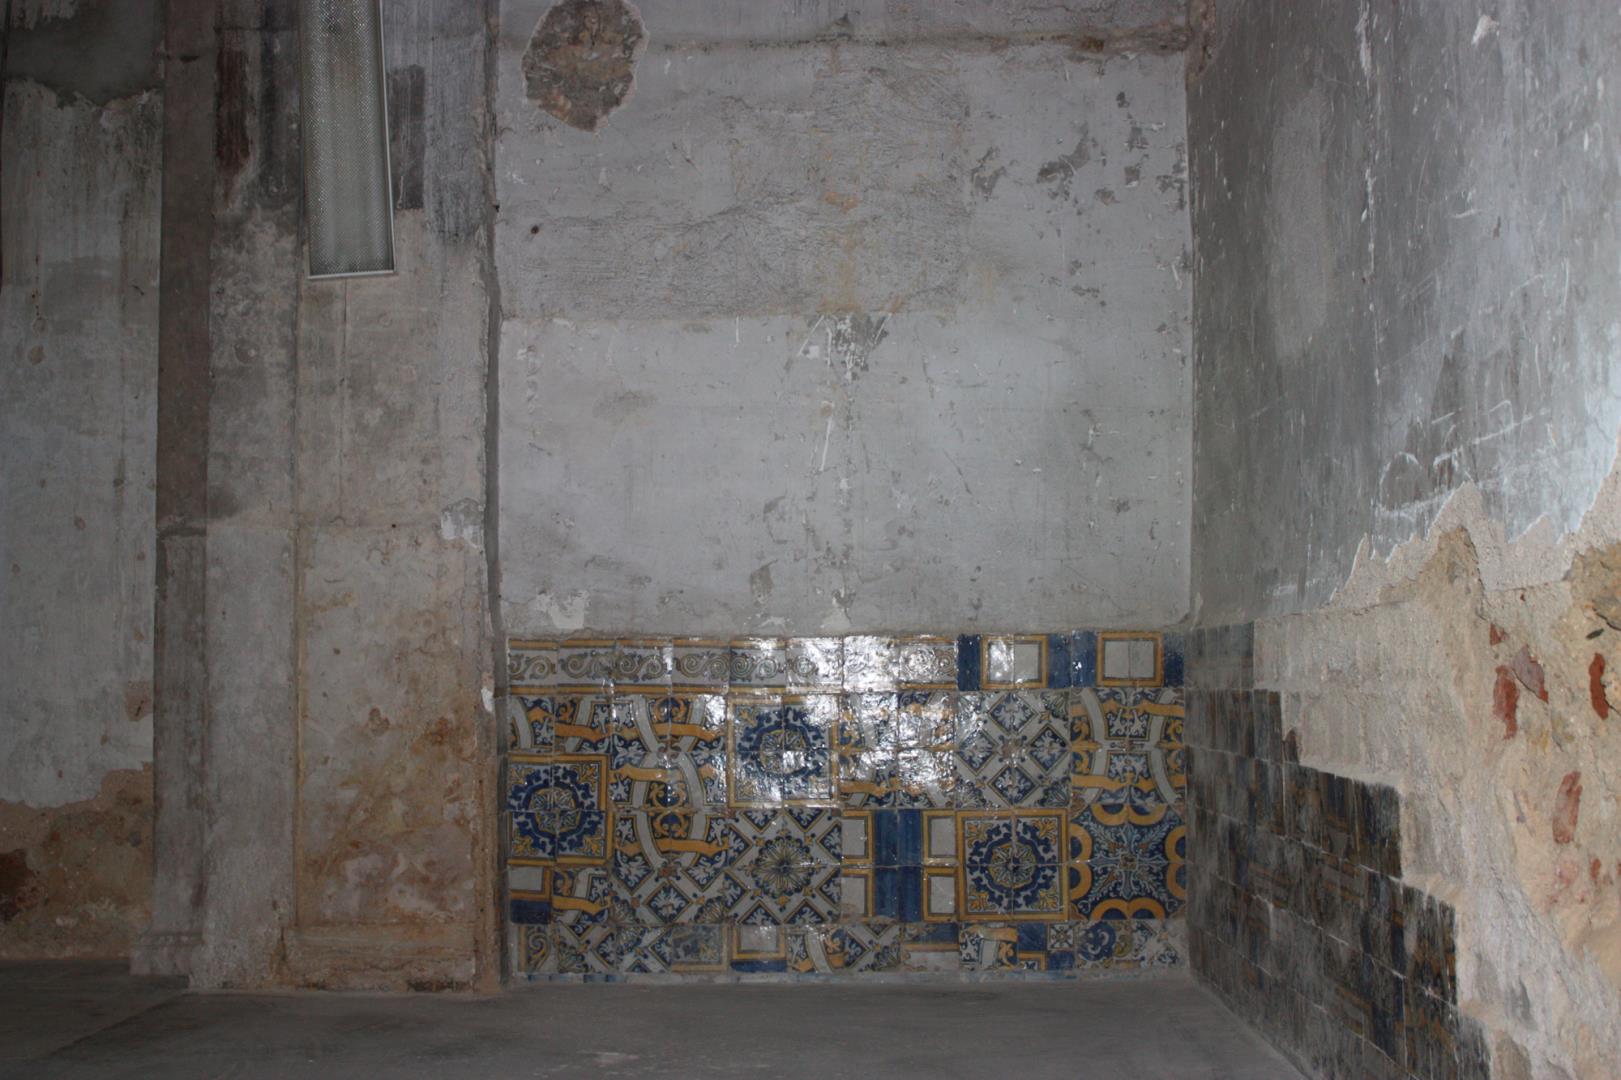 Legenda: Revestimento cerâmico da capela-mor, parede 2, secção 1